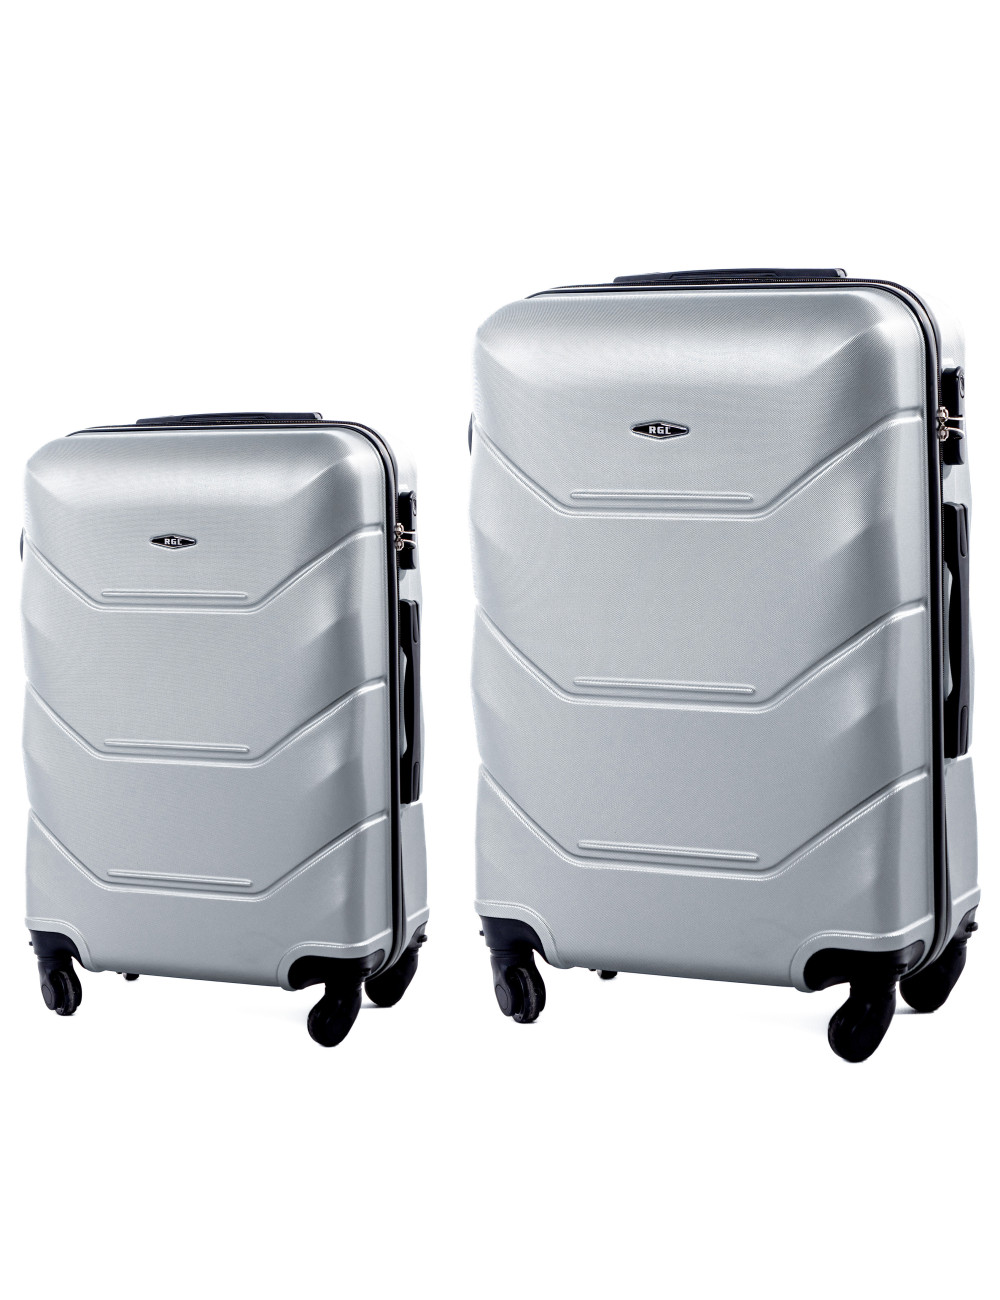 720 RGL zestaw walizek 2w1 L+XL - srebrny